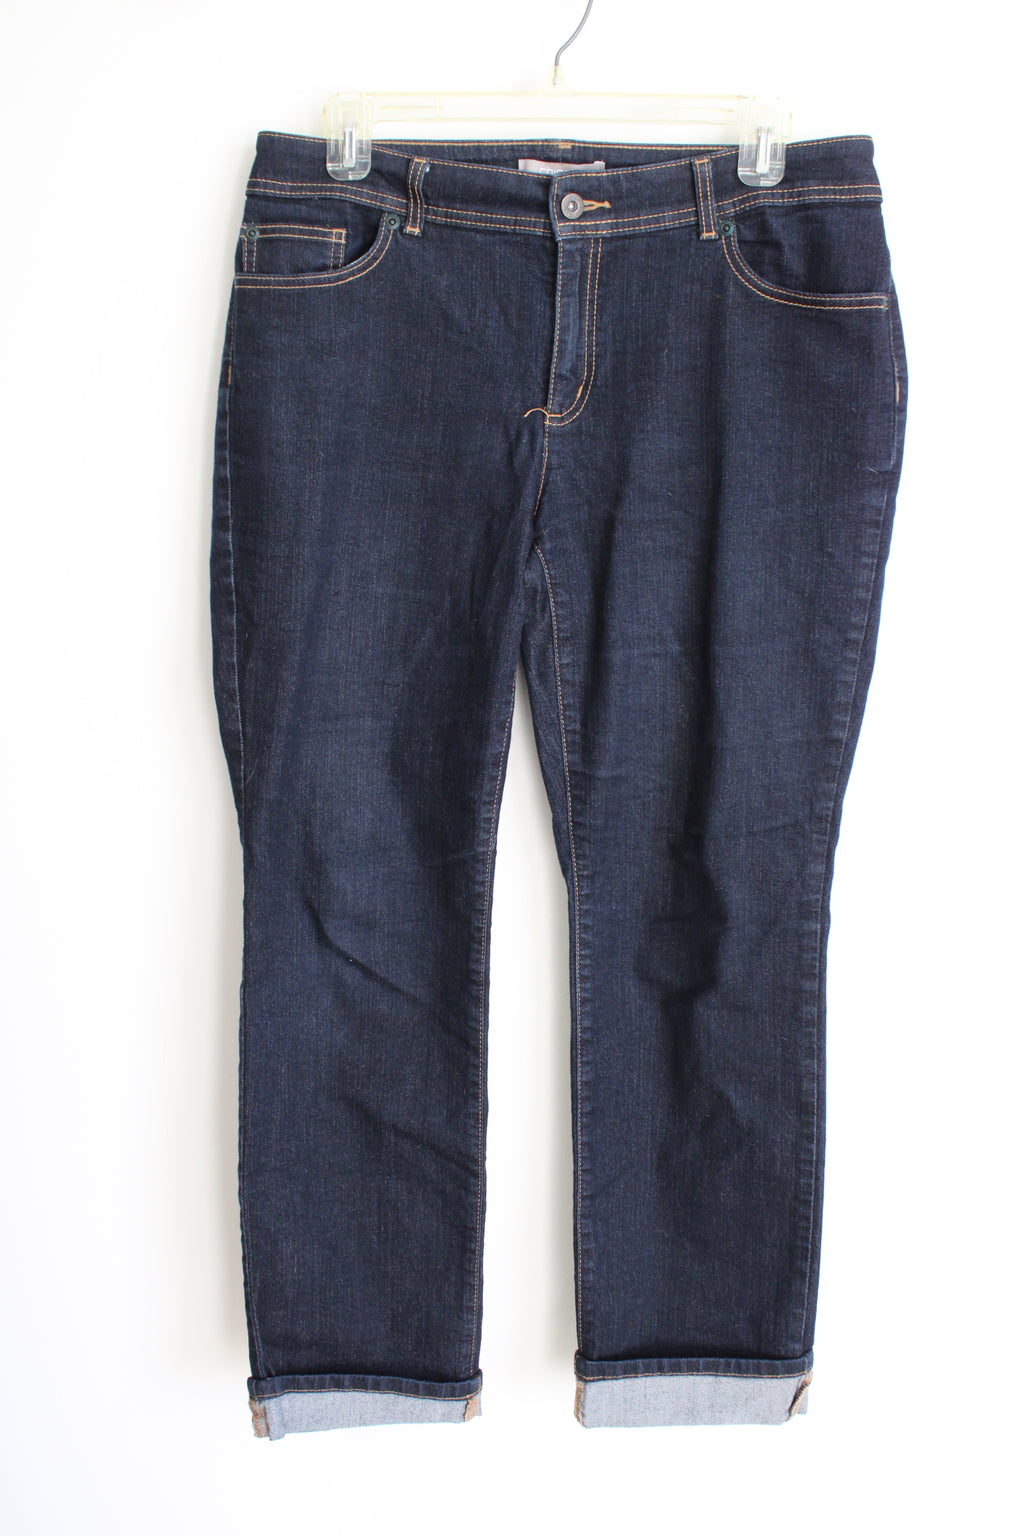 Chico's Dark Wash Cuff Jeans | 1 Short (M/8)